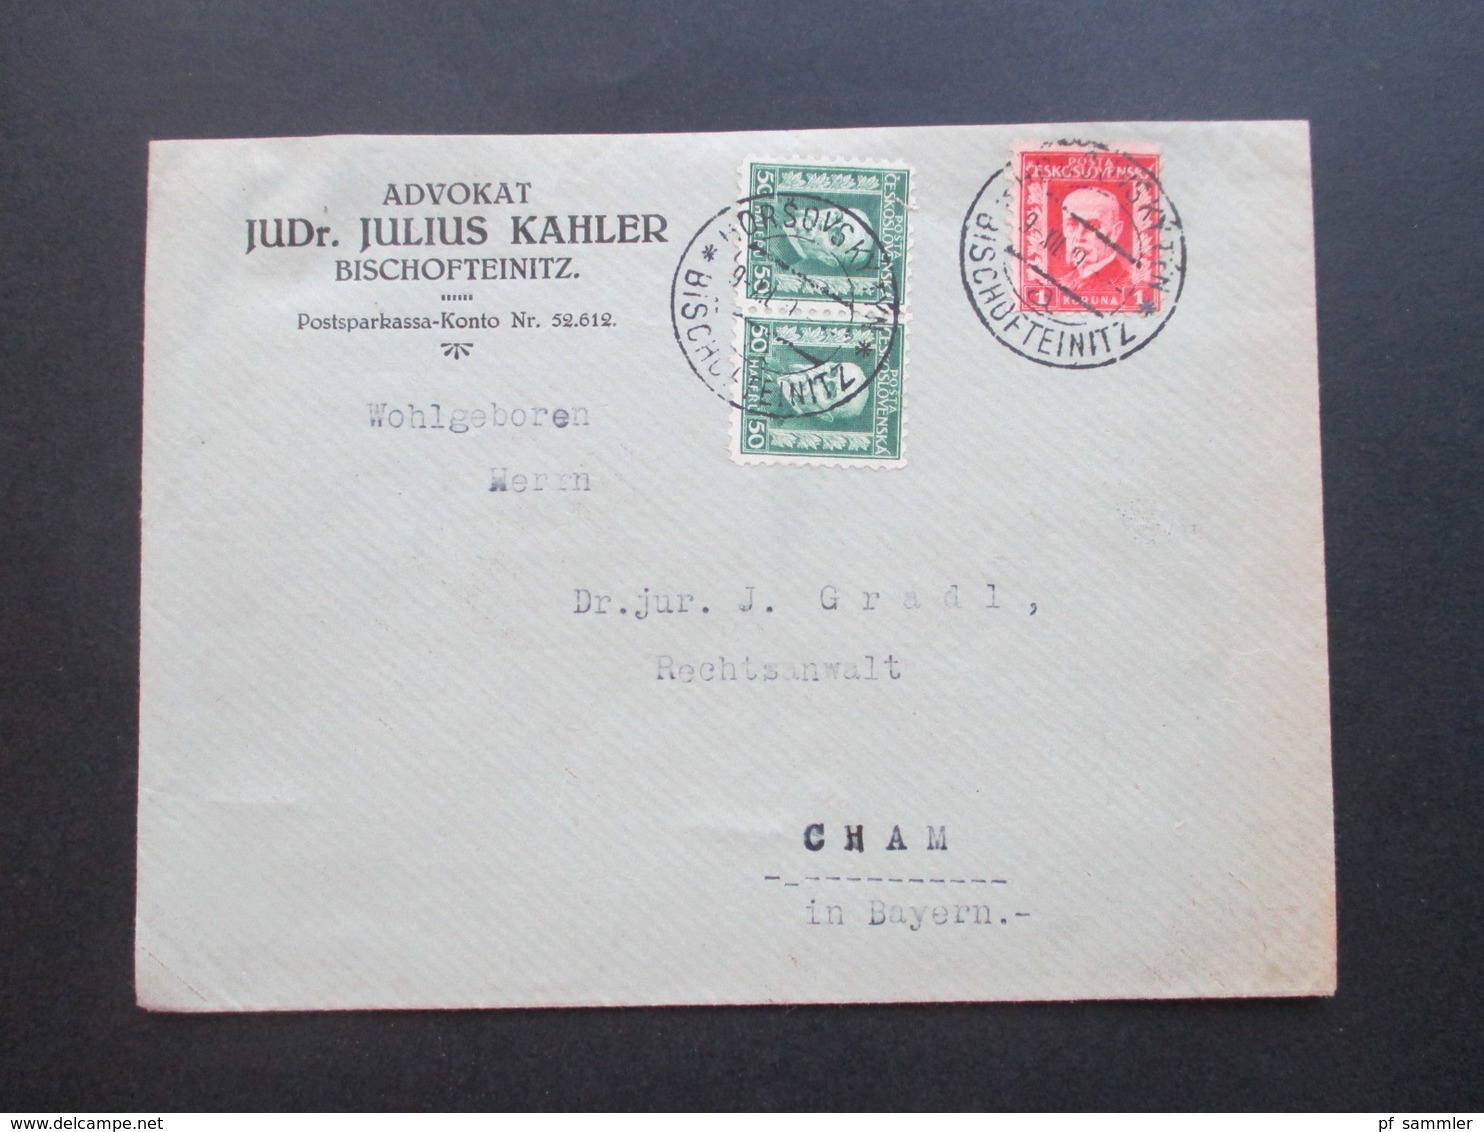 CSSR / Sudetenland 1929 Beleg Aus Bischofteinitz Advokat JUDr. Julius Kahler Zweisprachiger Stempel - Brieven En Documenten